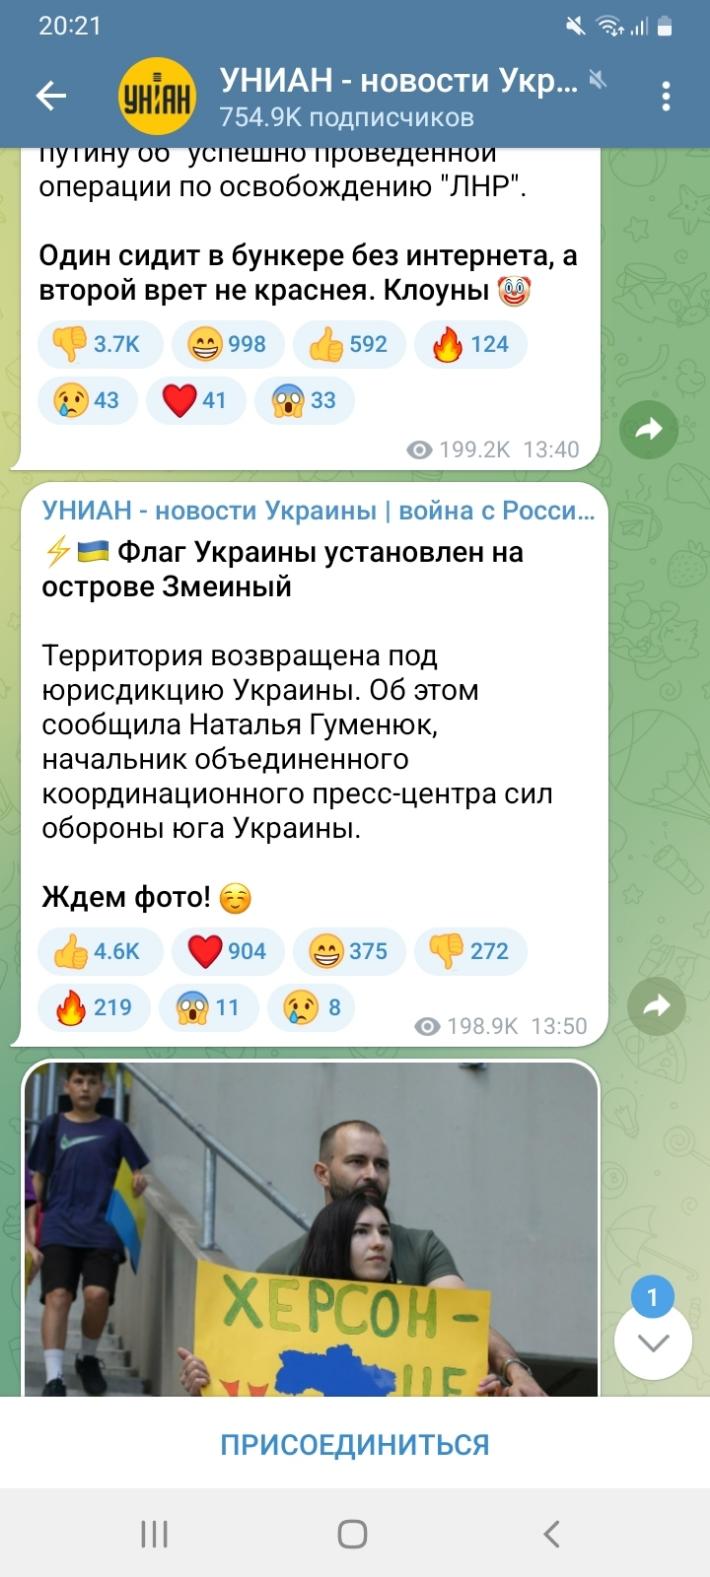 Униан телеграмм на русском языке фото 2